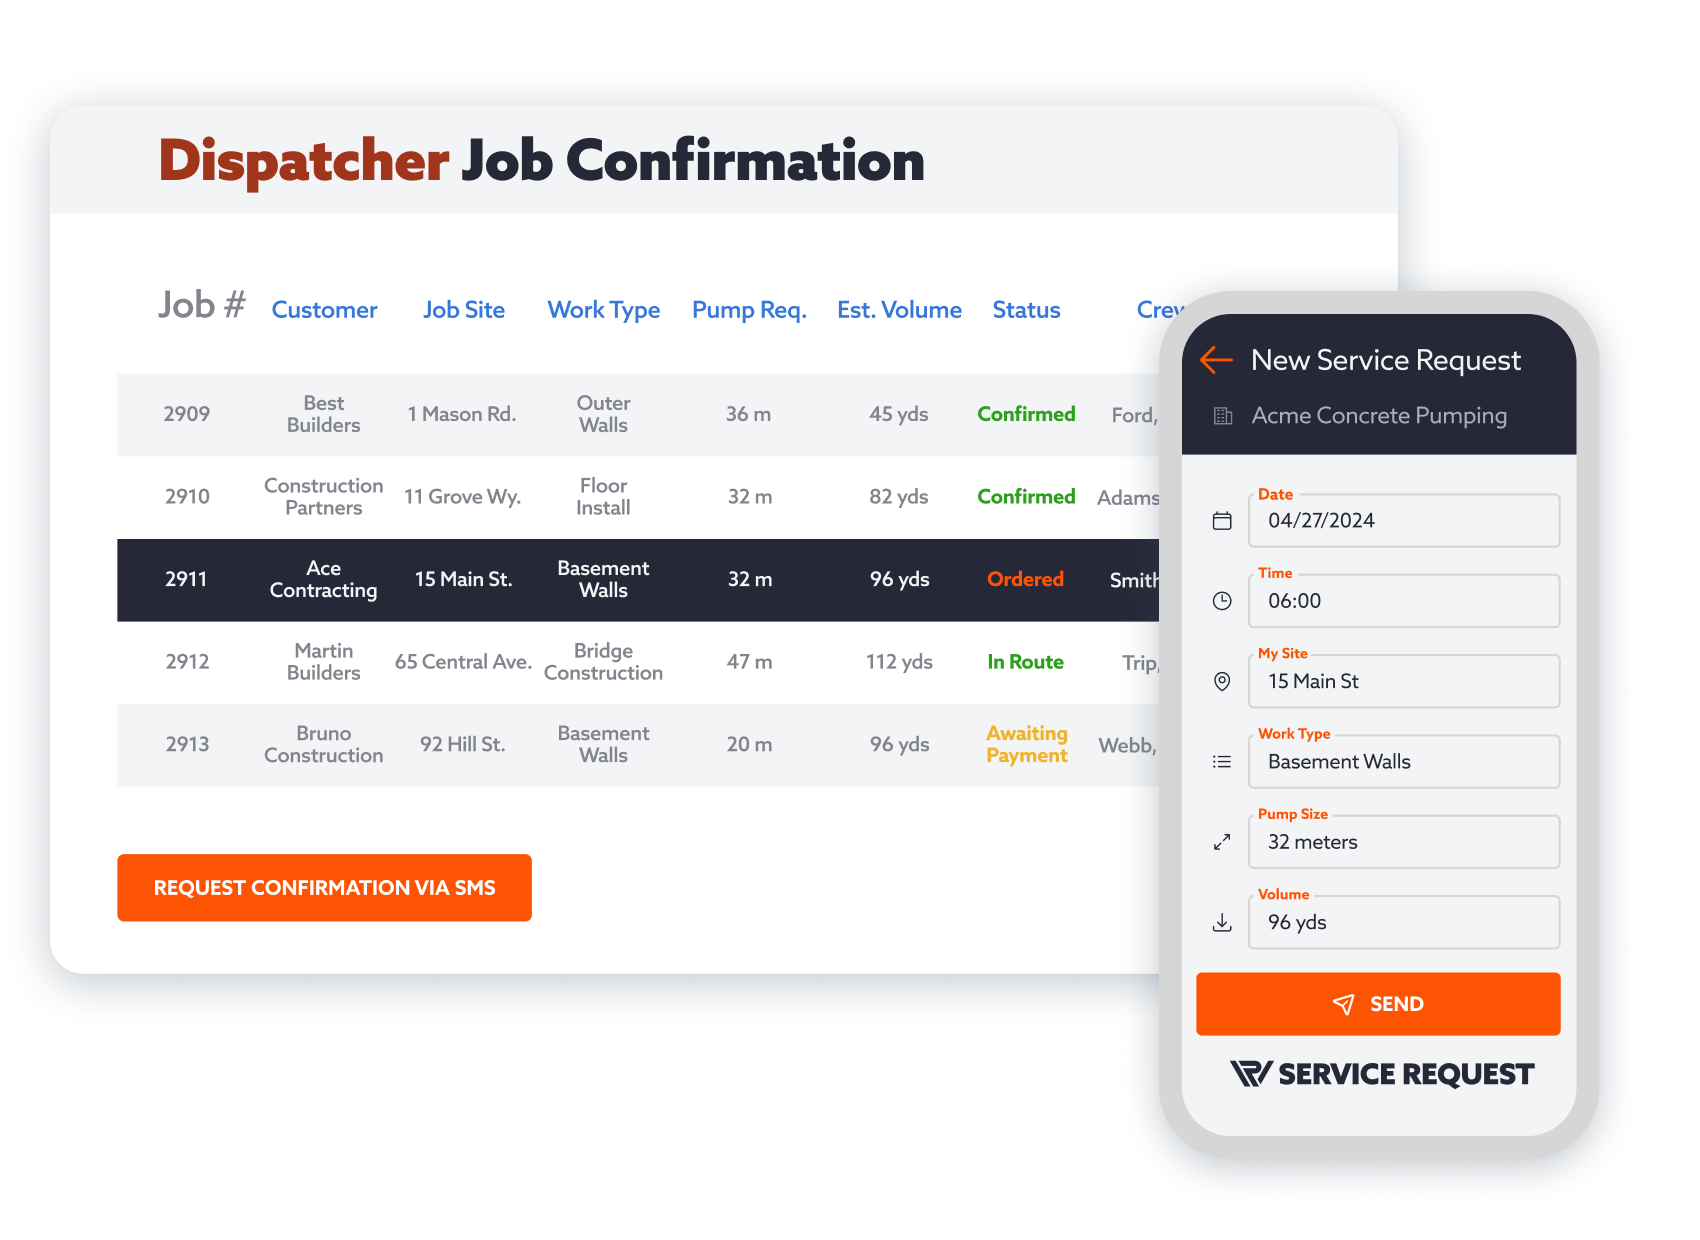 Dispatcher Job Confirmation & SR Requests - A